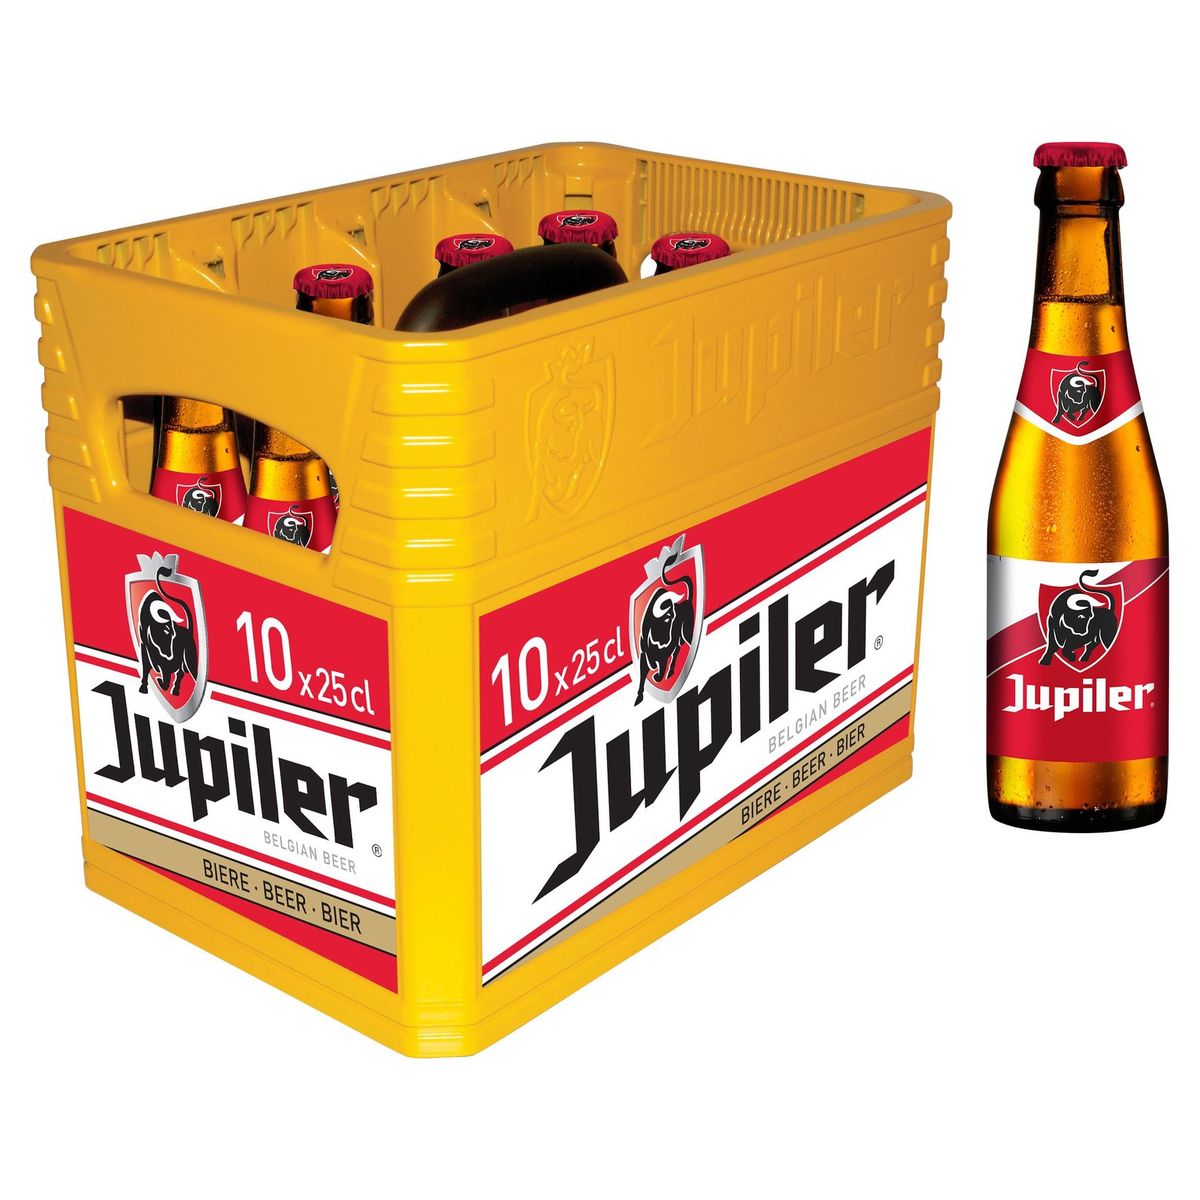 Jupiler Pils Belge Caisse 10 x 25 cl